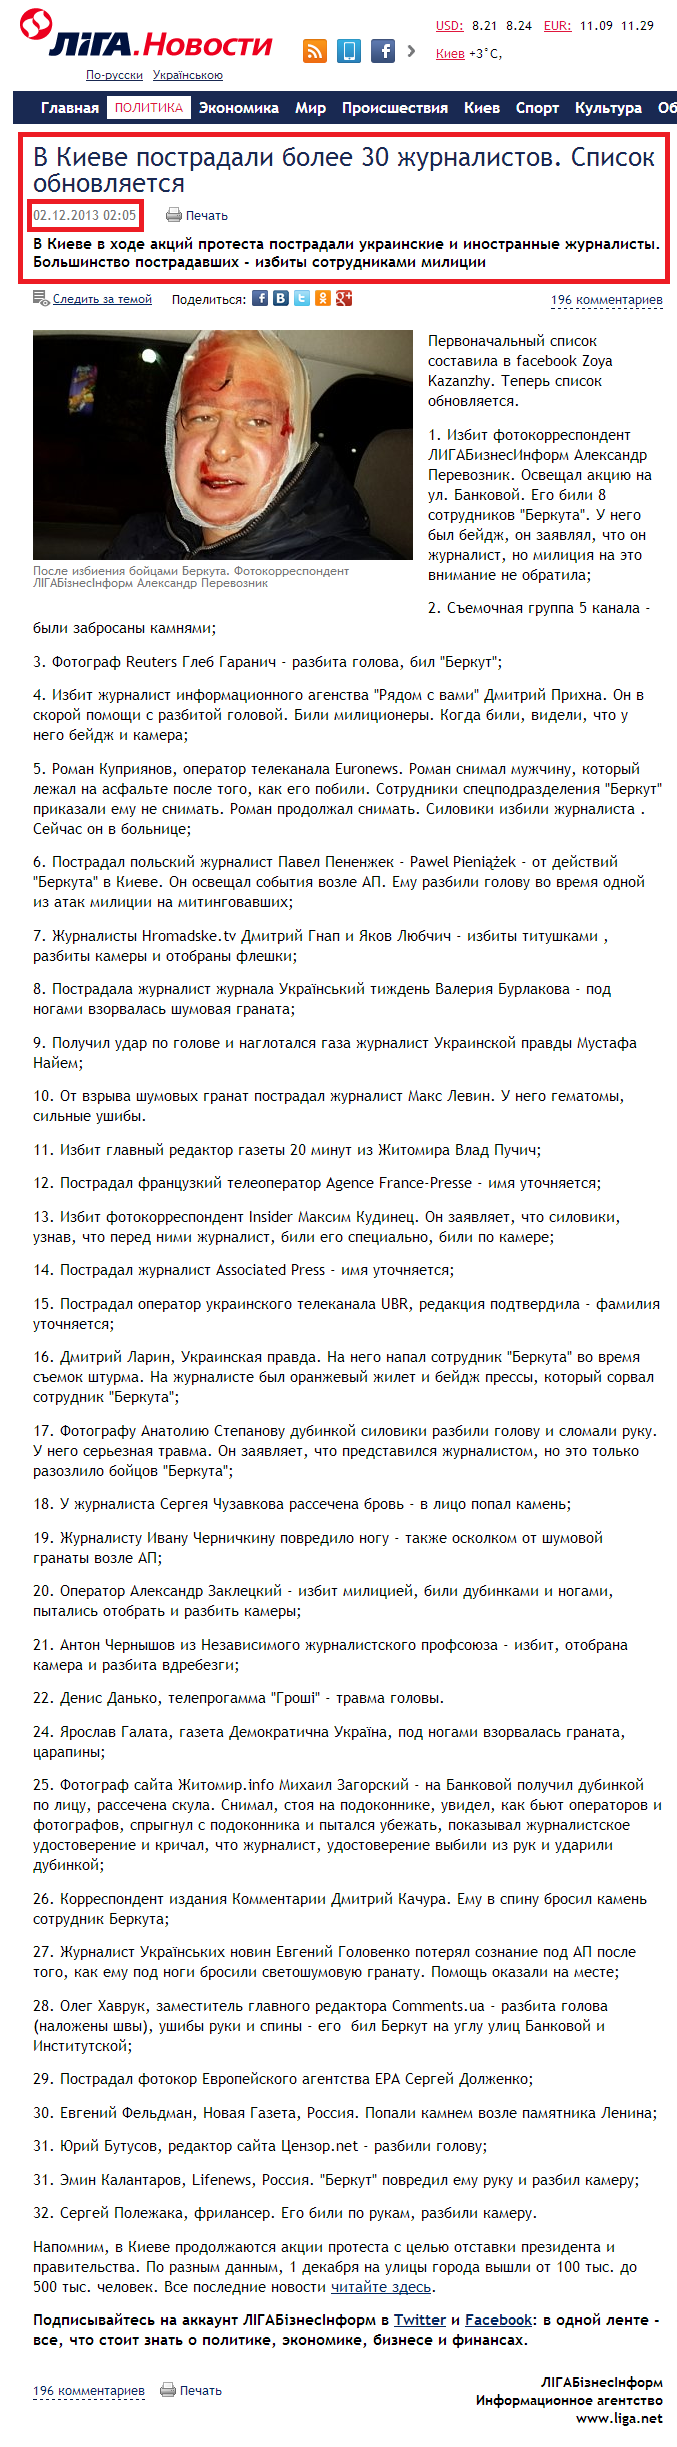 http://news.liga.net/news/politics/933645-v_kieve_postradali_bolshe_desyatka_zhurnalistov_spisok.htm